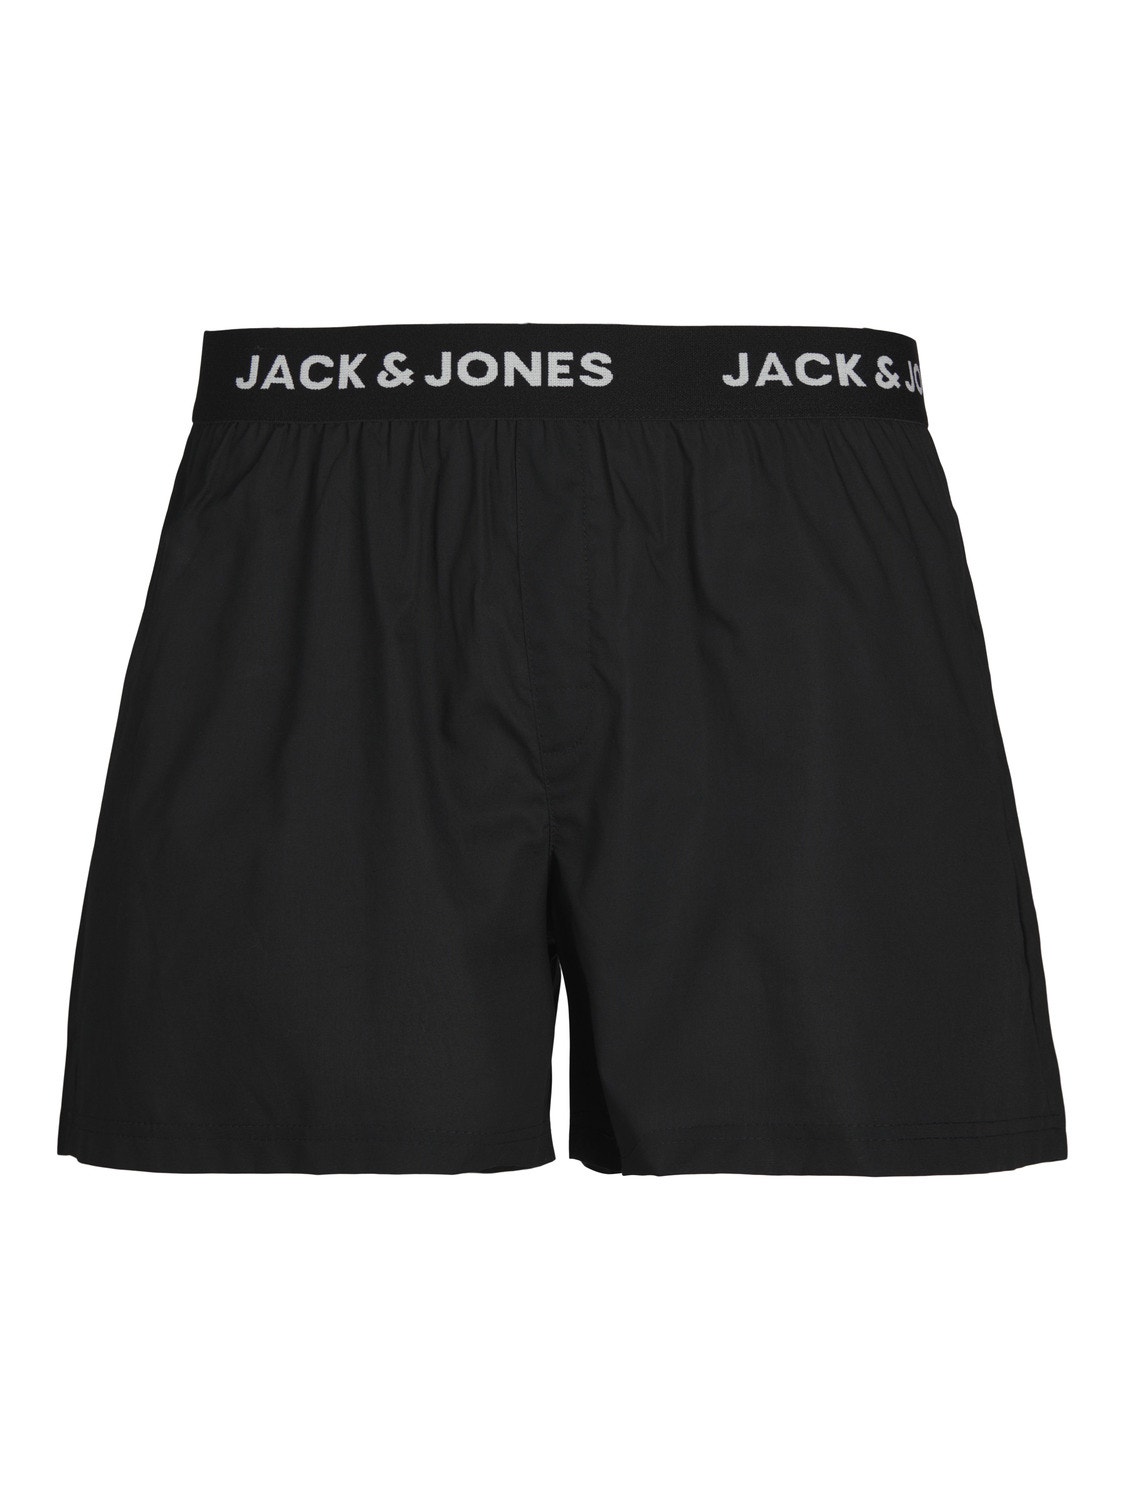 Jack & Jones 3er-pack Boxershorts -Black - 12253686